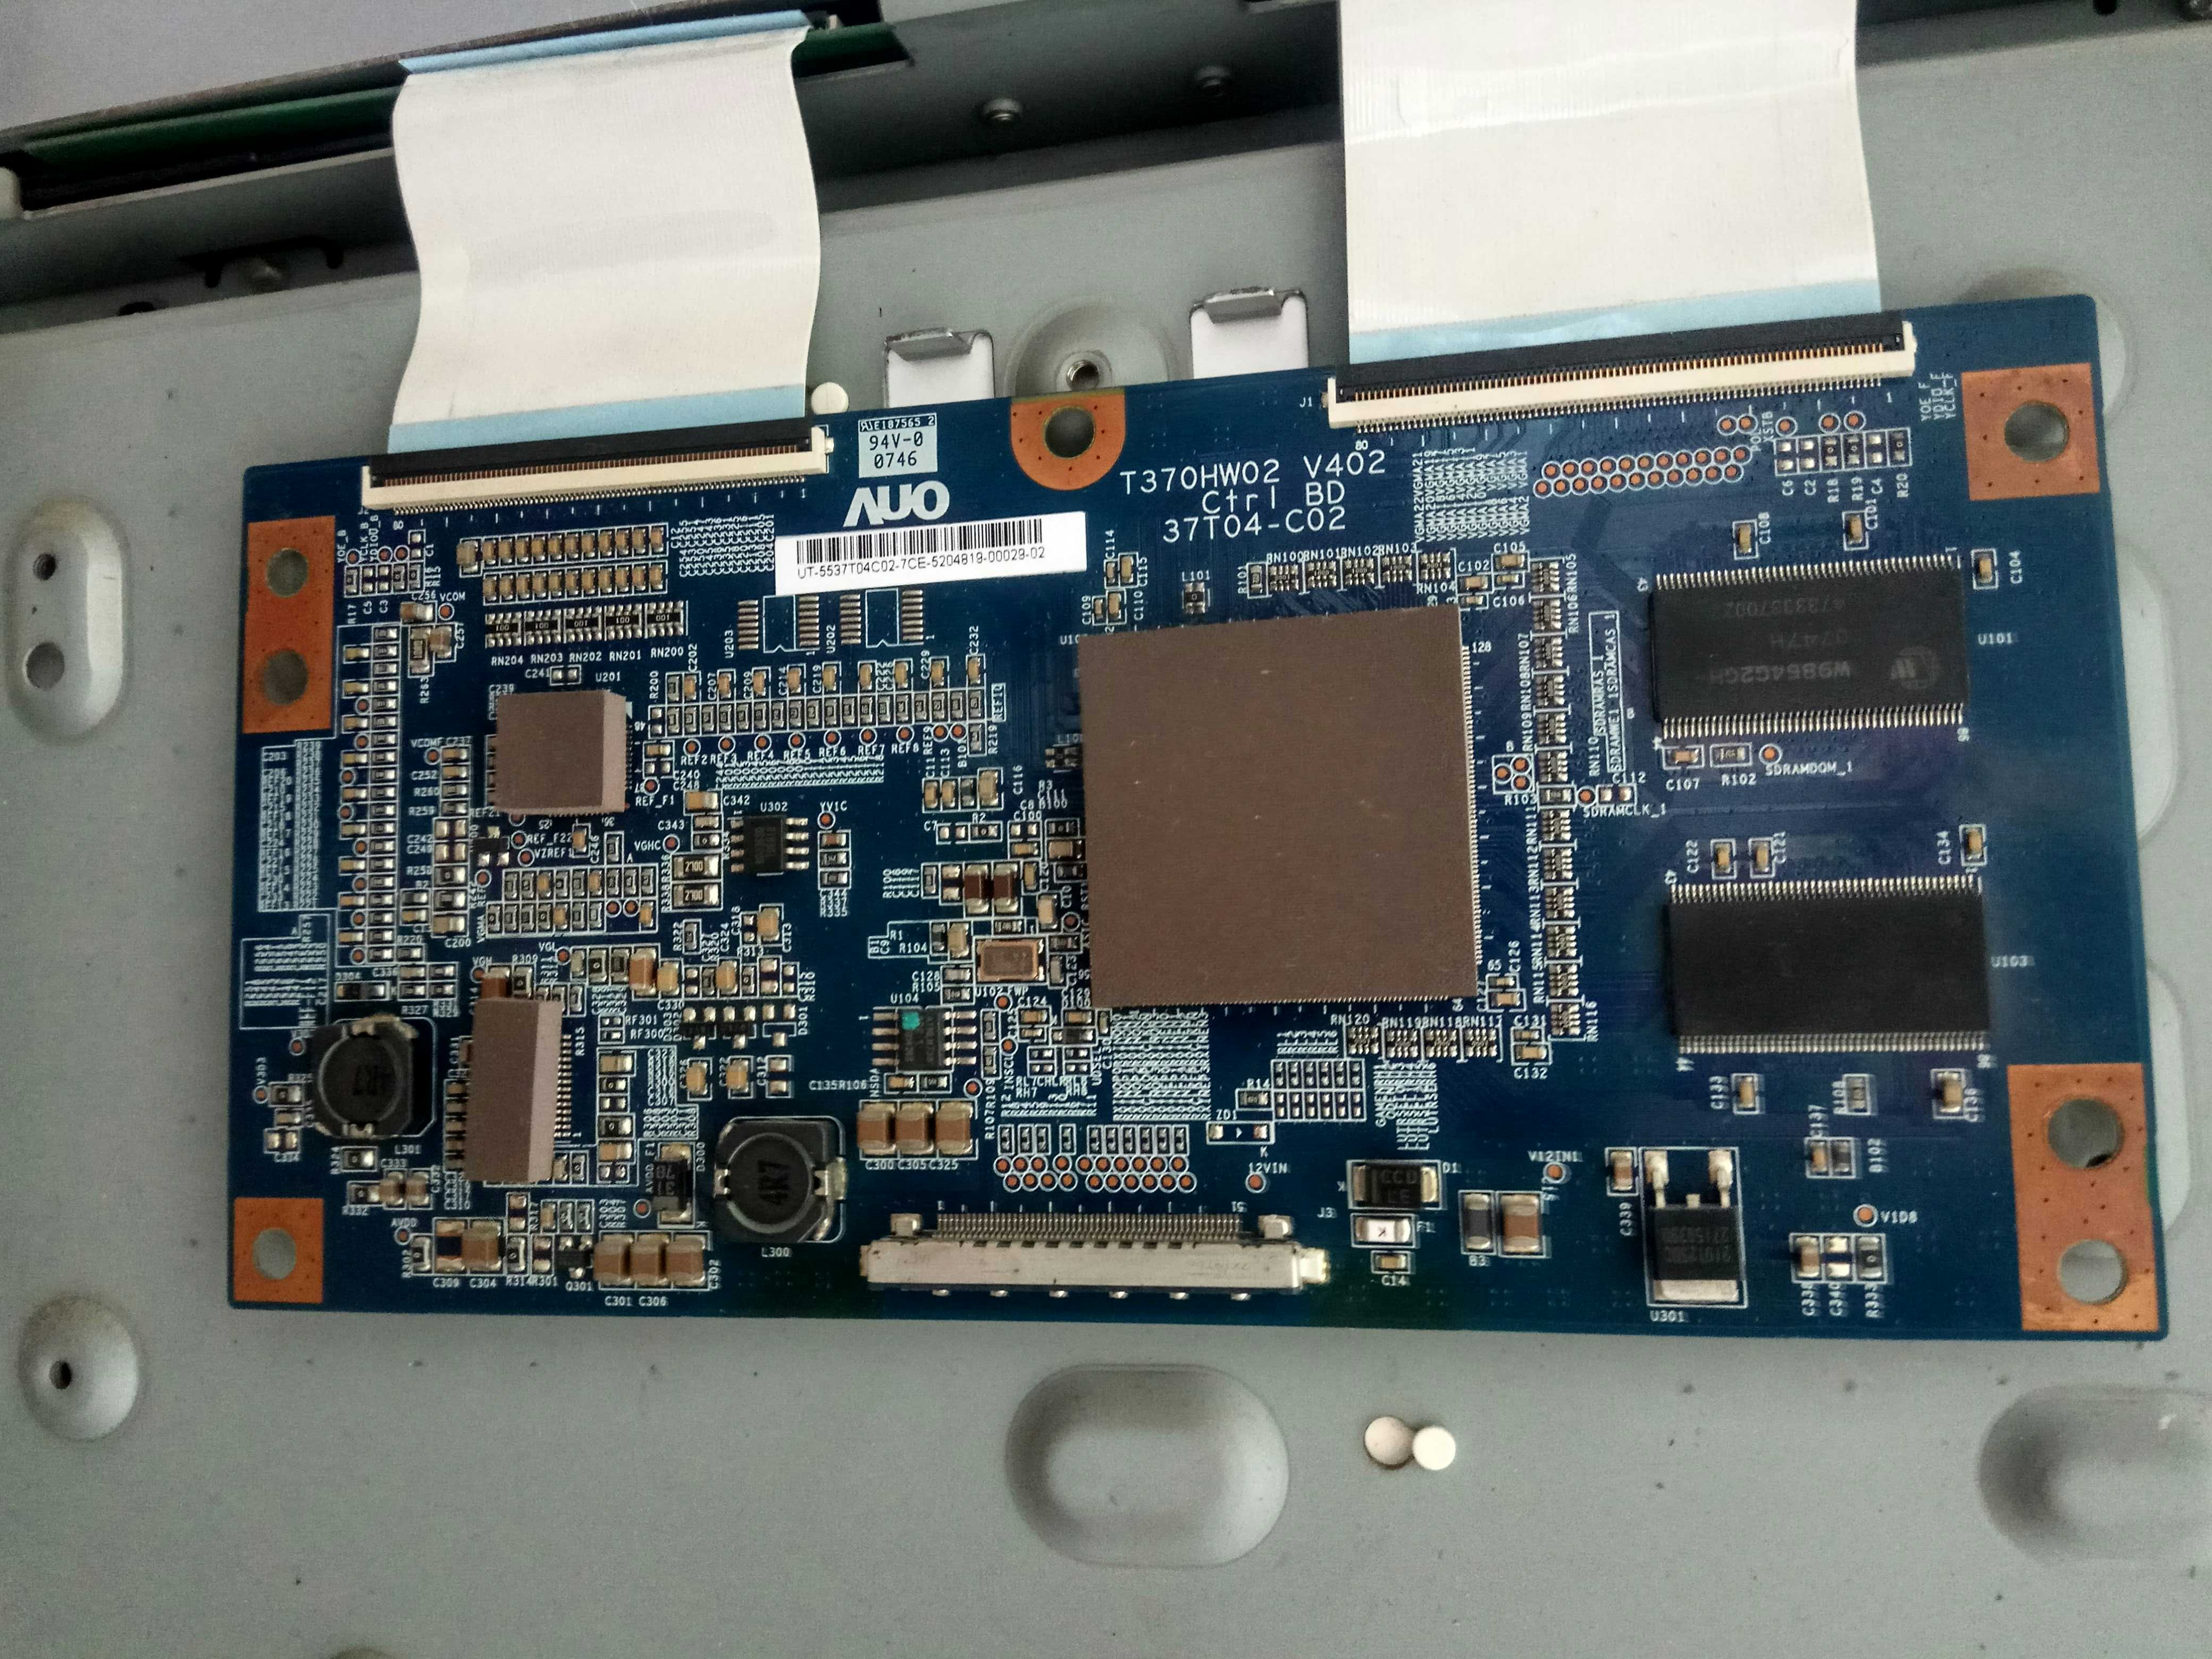 Samsung T-con Board AUO T370HW02 V402 Ctrl BD 37T04-C02